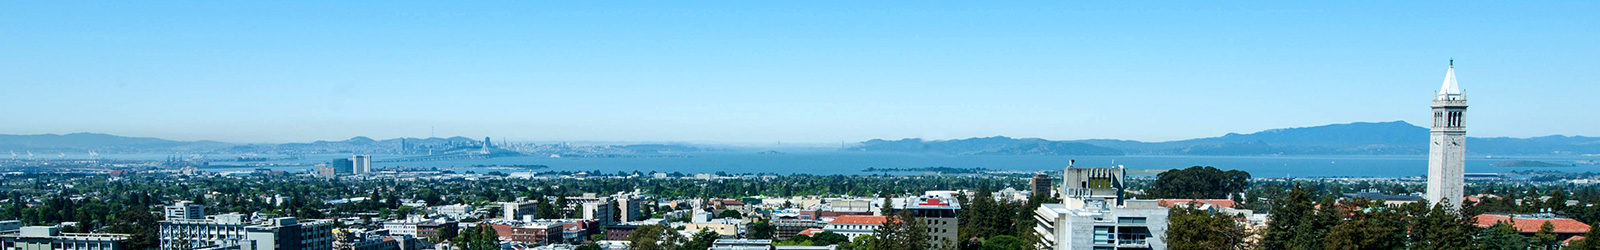 UC Berkeley image by Keegan Houser